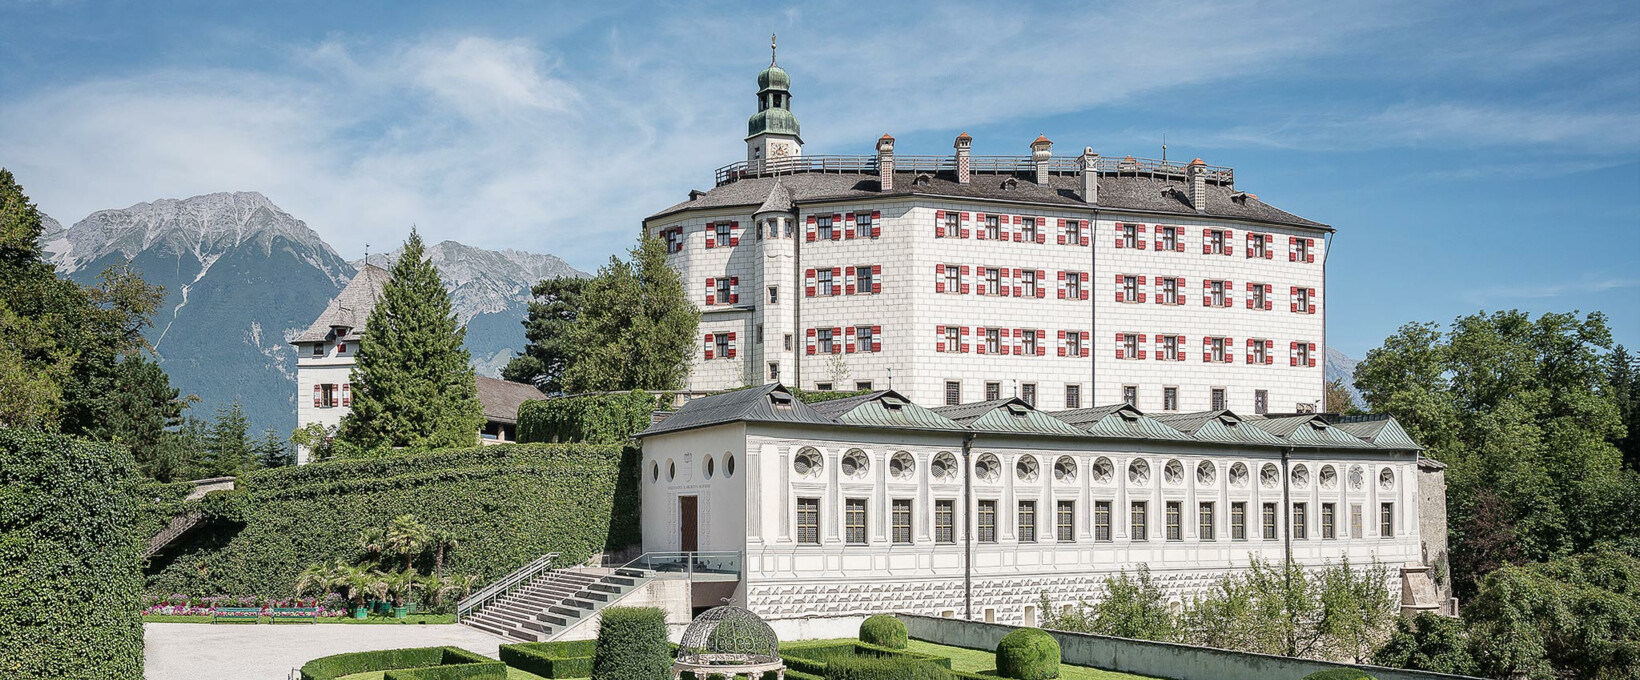 Schloss Ambras | Innsbruck | © KHM-Museumsverband